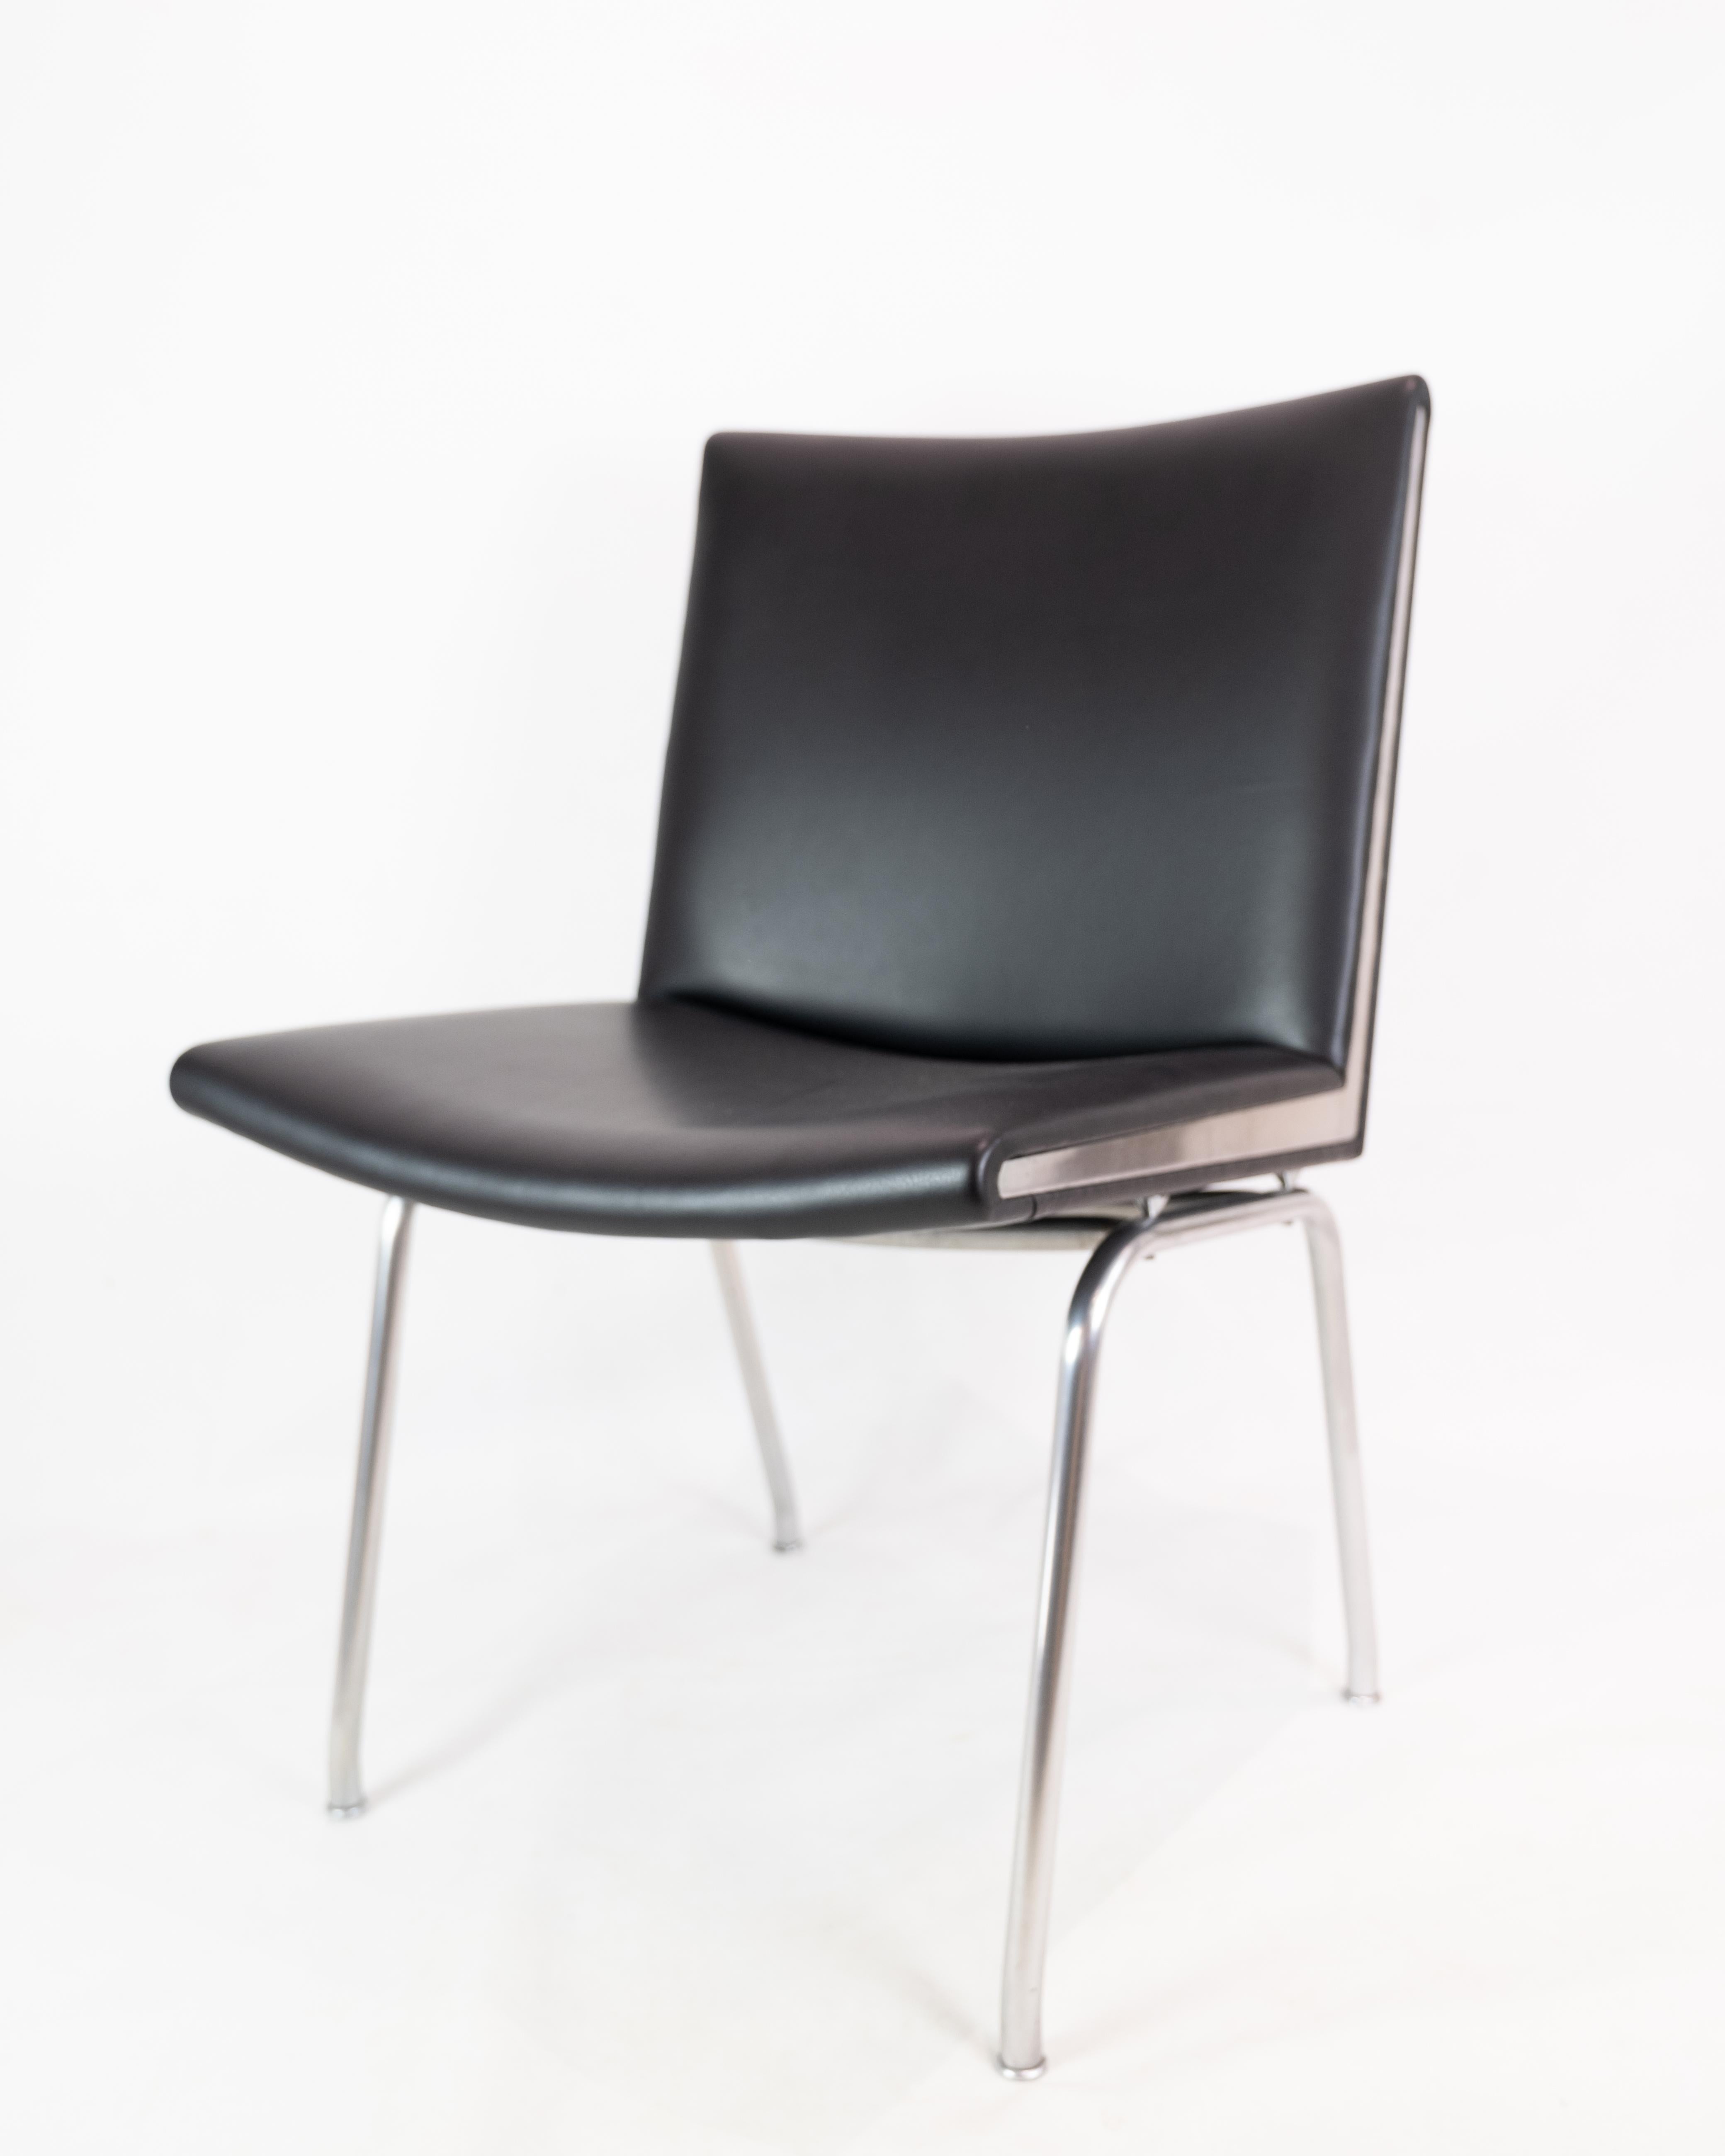 Kastrup Chair in Black Leather Model CH401 By Hans J. Wegner & Carl Hansen & Søn For Sale 2